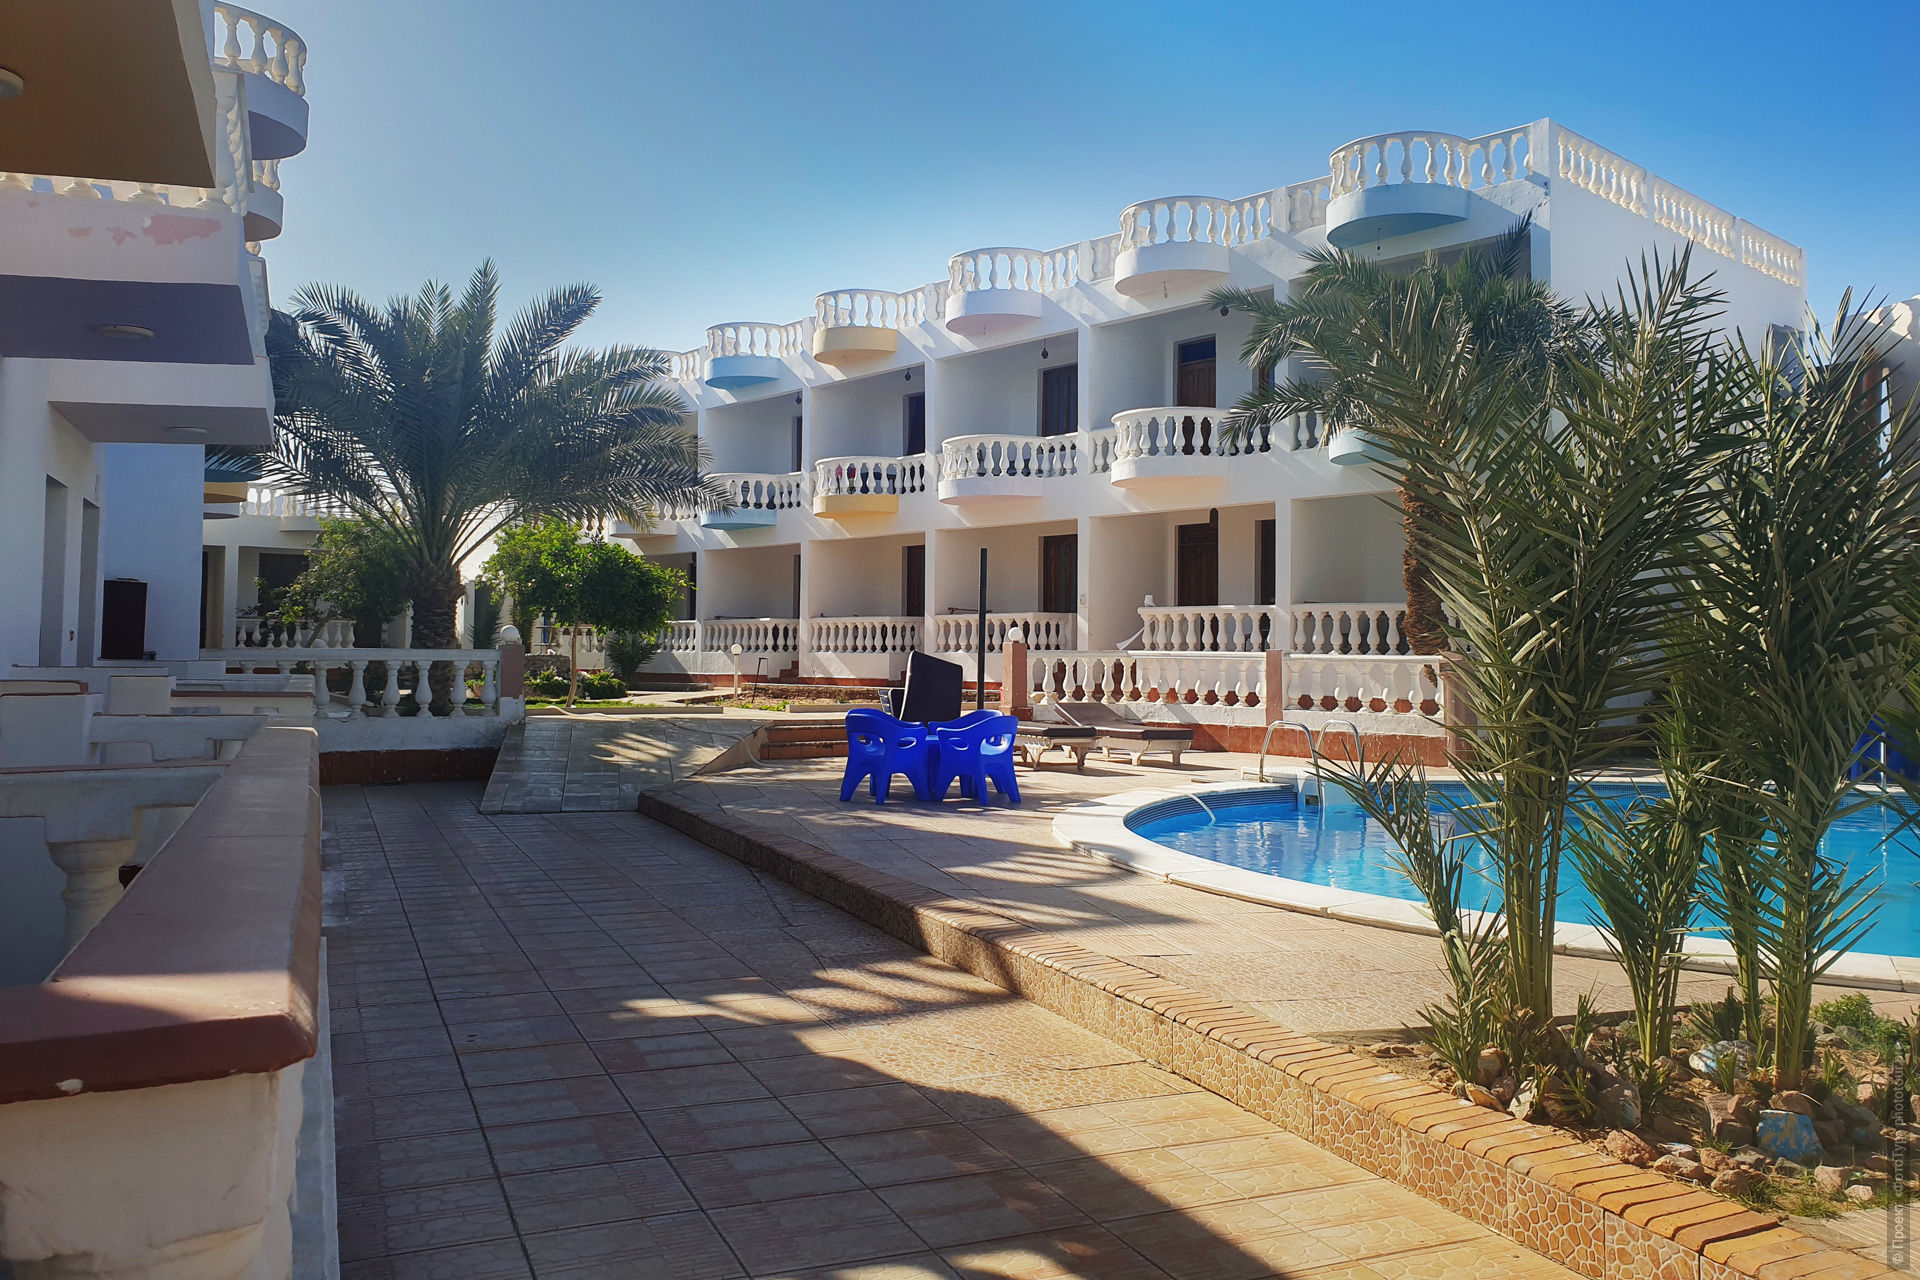 Отель гостиничного типа на Машрабе, Дахаб, Синай.